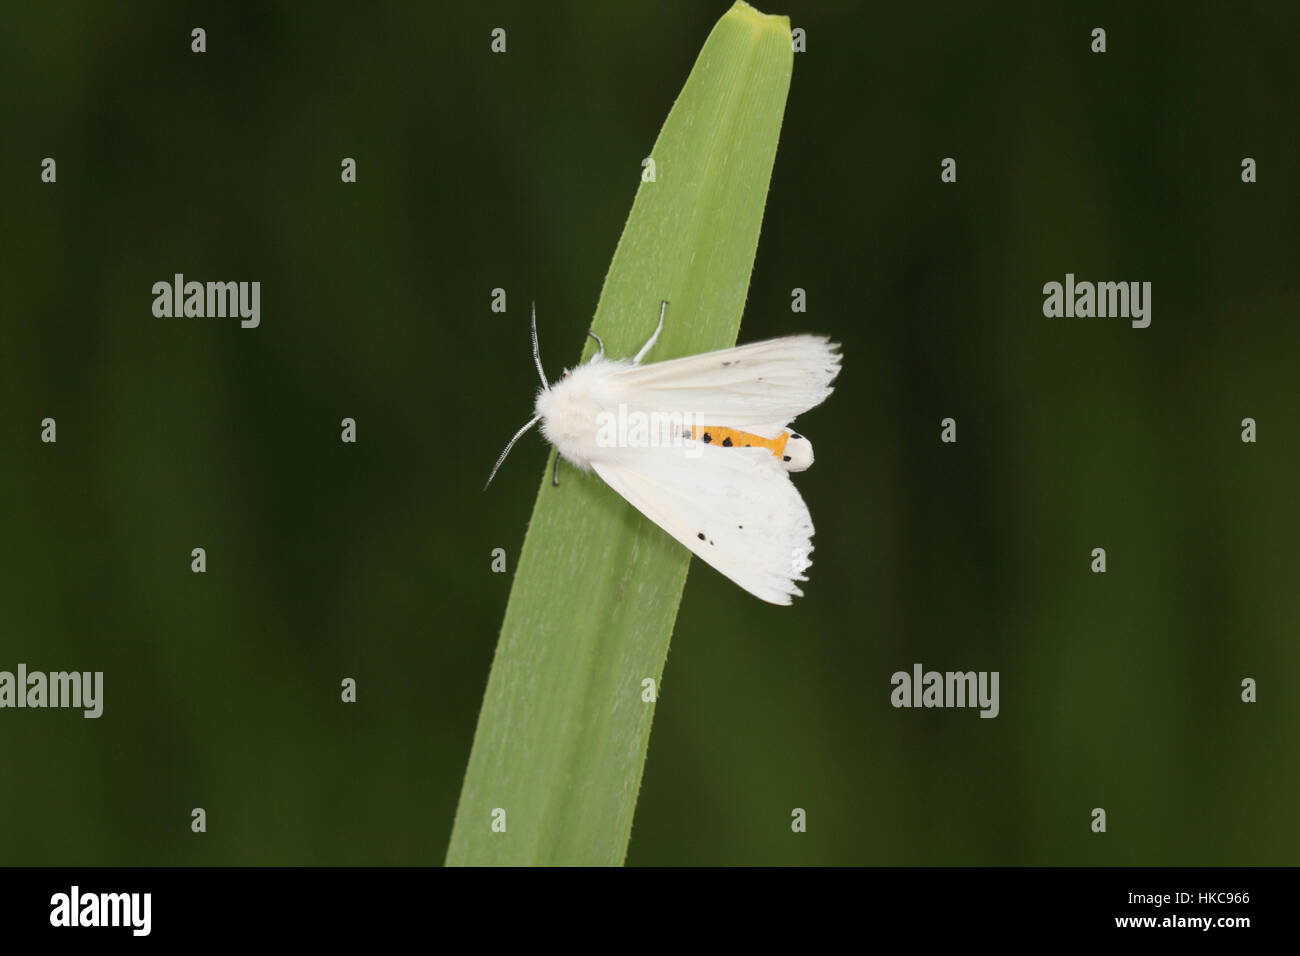 Hermine L'eau (Spilosoma urticae), un livre blanc et jaune, la rareté de l'espèce localisée et des zones humides & fenlands, dans les Norfolk Broads Banque D'Images